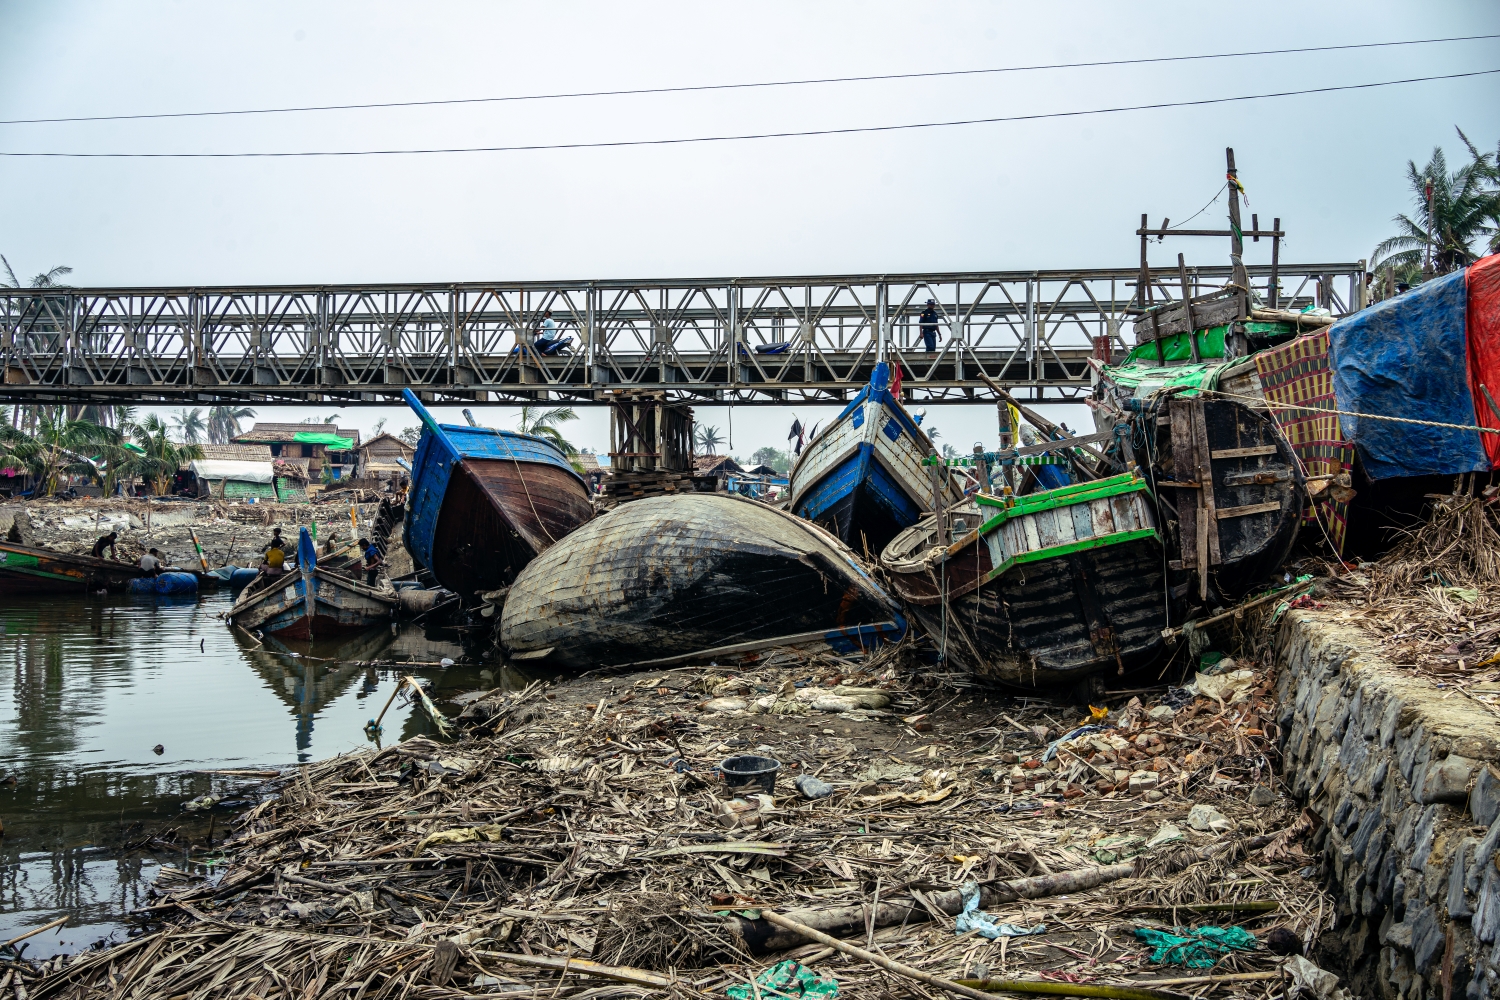 စစ်တွေမြို့ကုန်းတွင်းပိုင်းသို့ ဝင်ရောက်တိုက်ခတ်ခဲ့သော ဆိုင်ကလုန်းမိုခါကြောင့် ငါးဖမ်းလှေများ နစ်မြုပ်ပျက်စီးနေပုံ။ ဓါတ်ပုံ